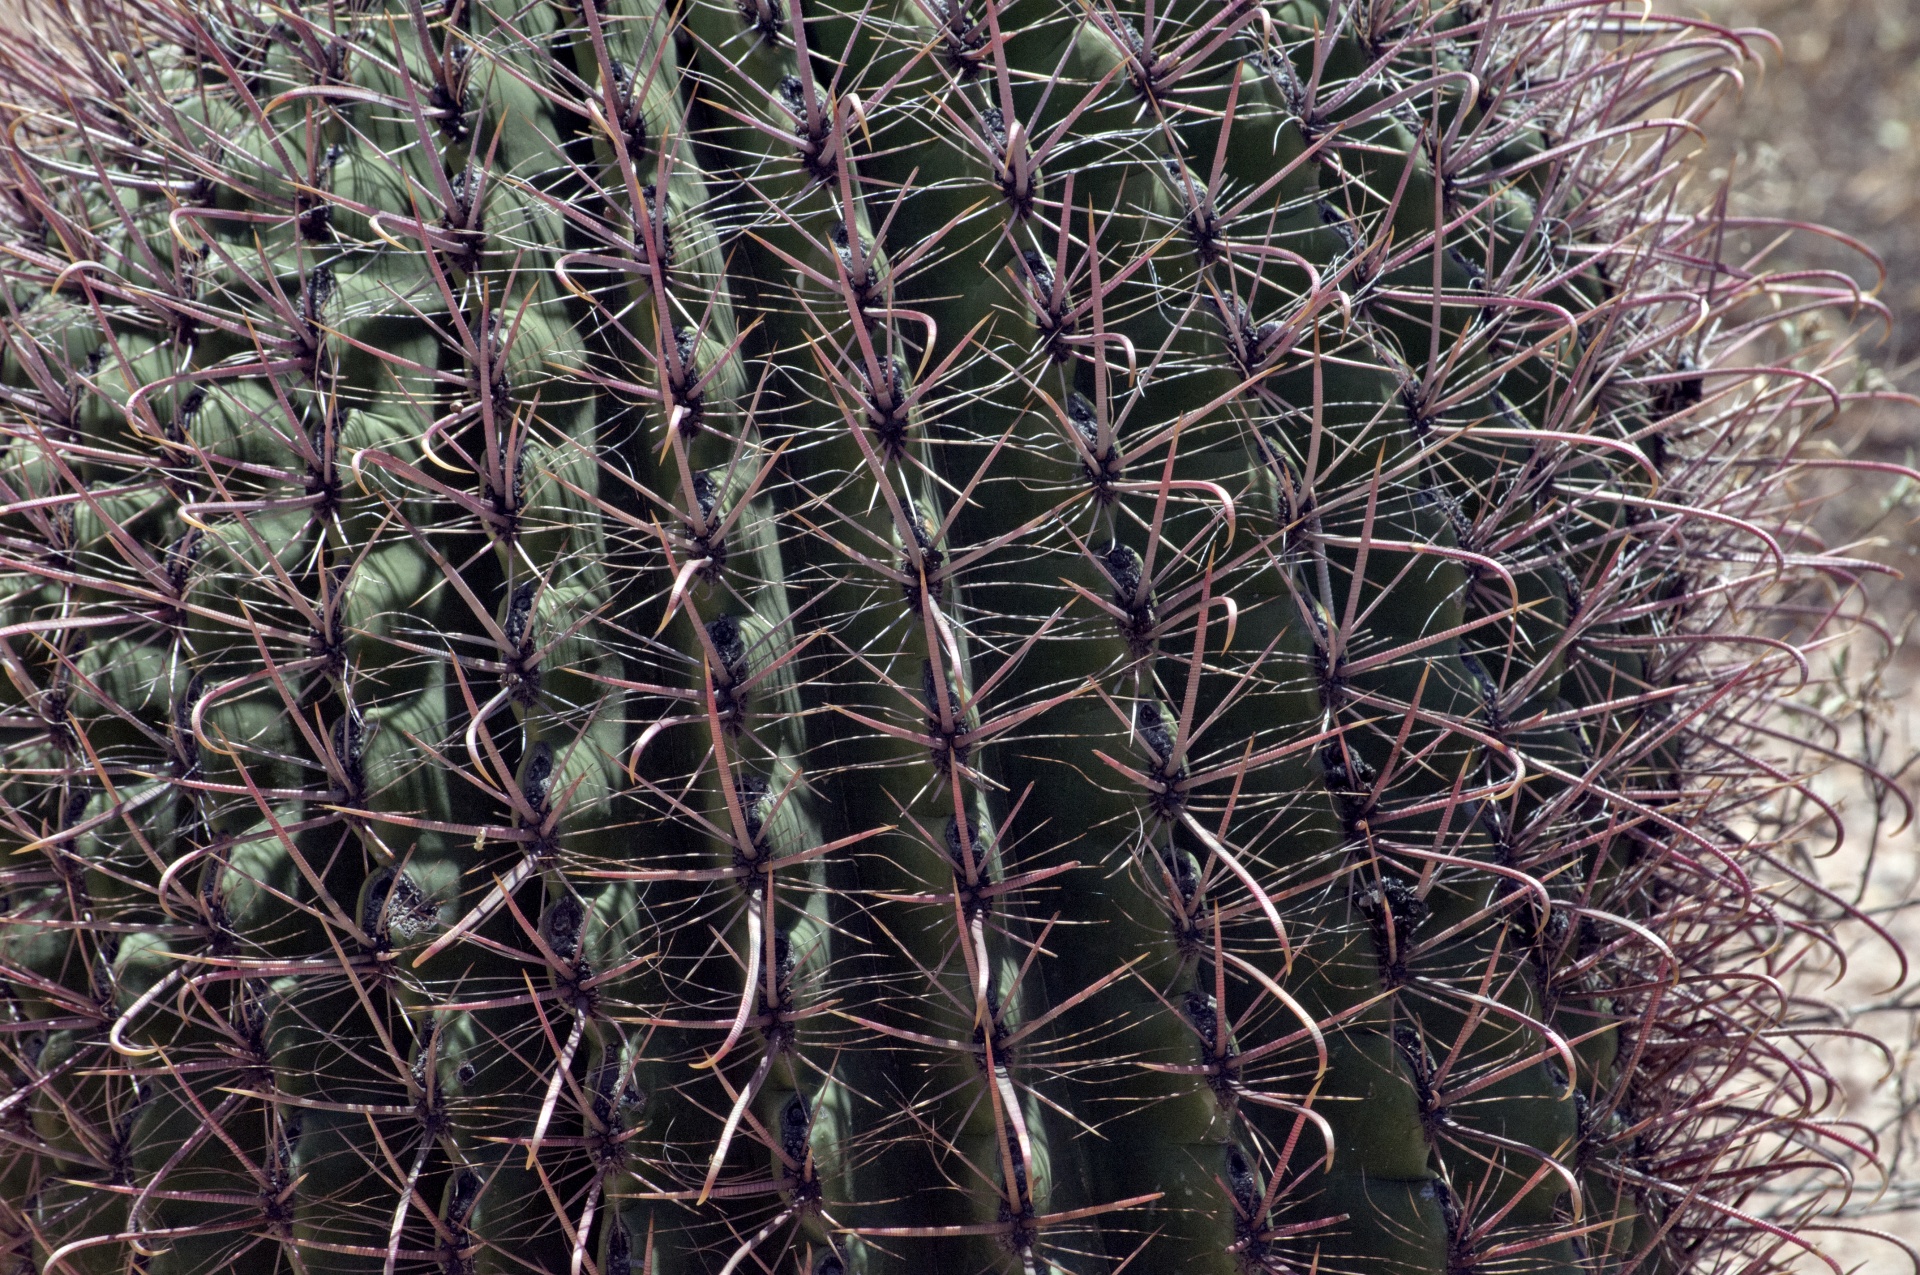 cactus barrel cactus close-up free photo